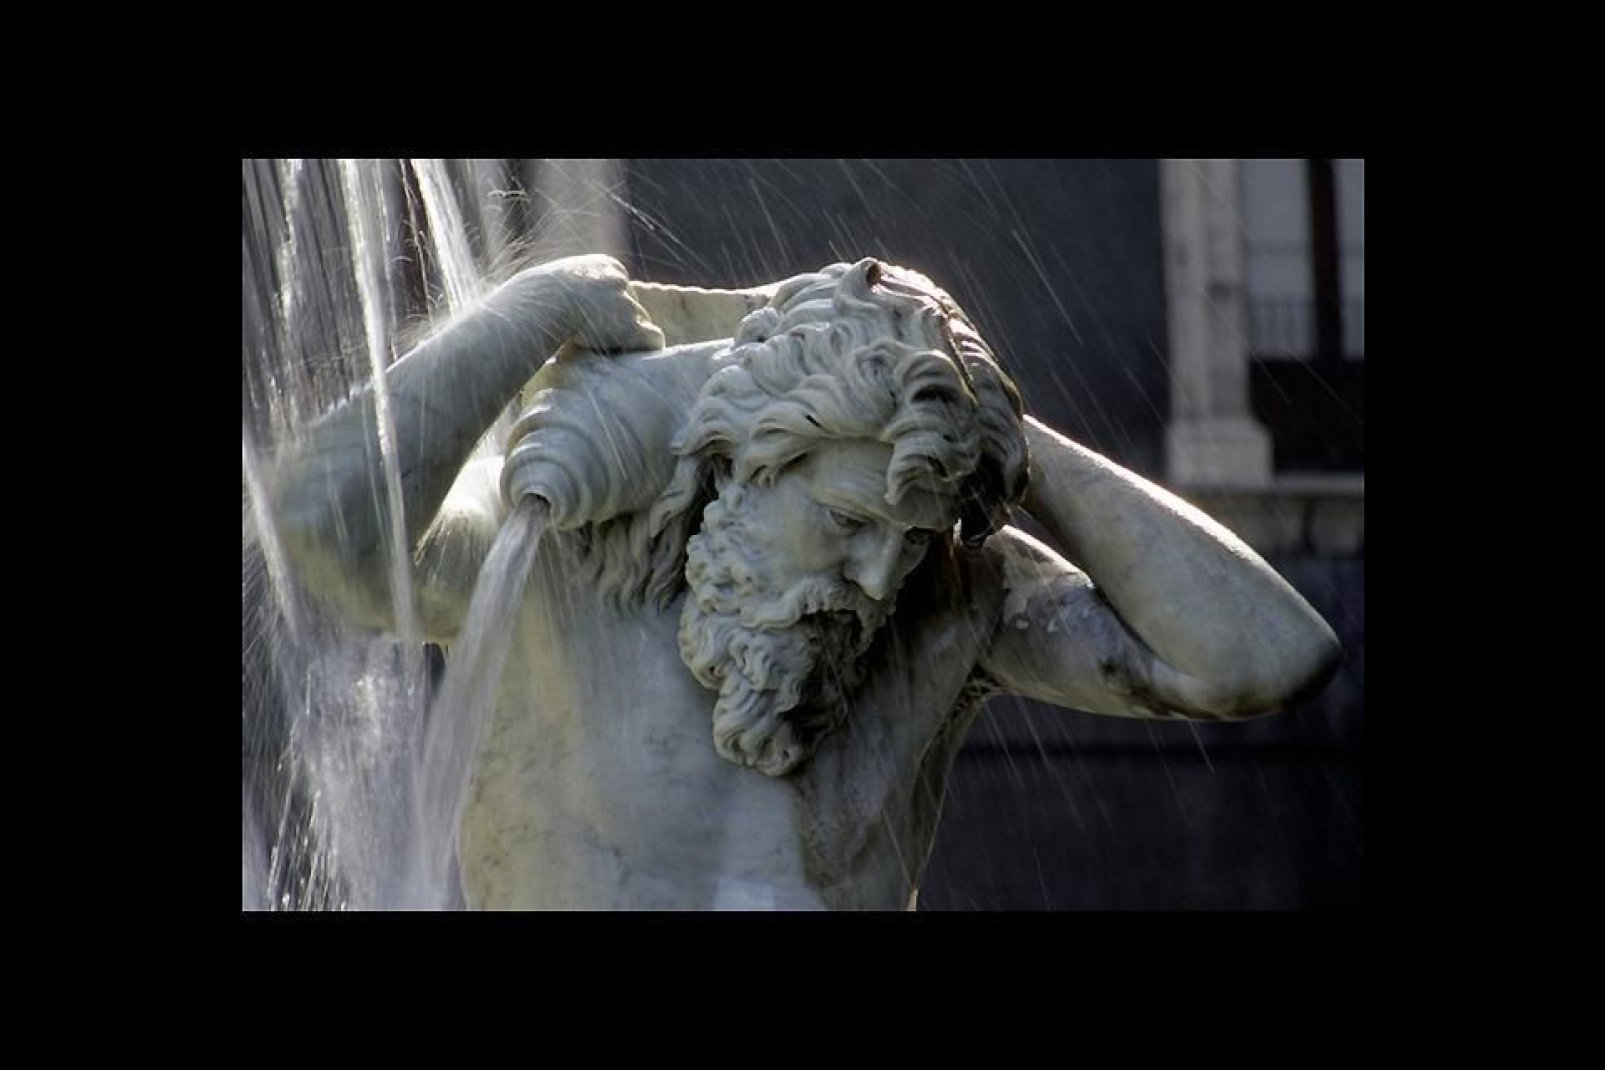 Catane possède de nombreuses fontaines monumentales. La photo illustre un détail de la fontaine de l'Amenano sur la Piazza Duomo.